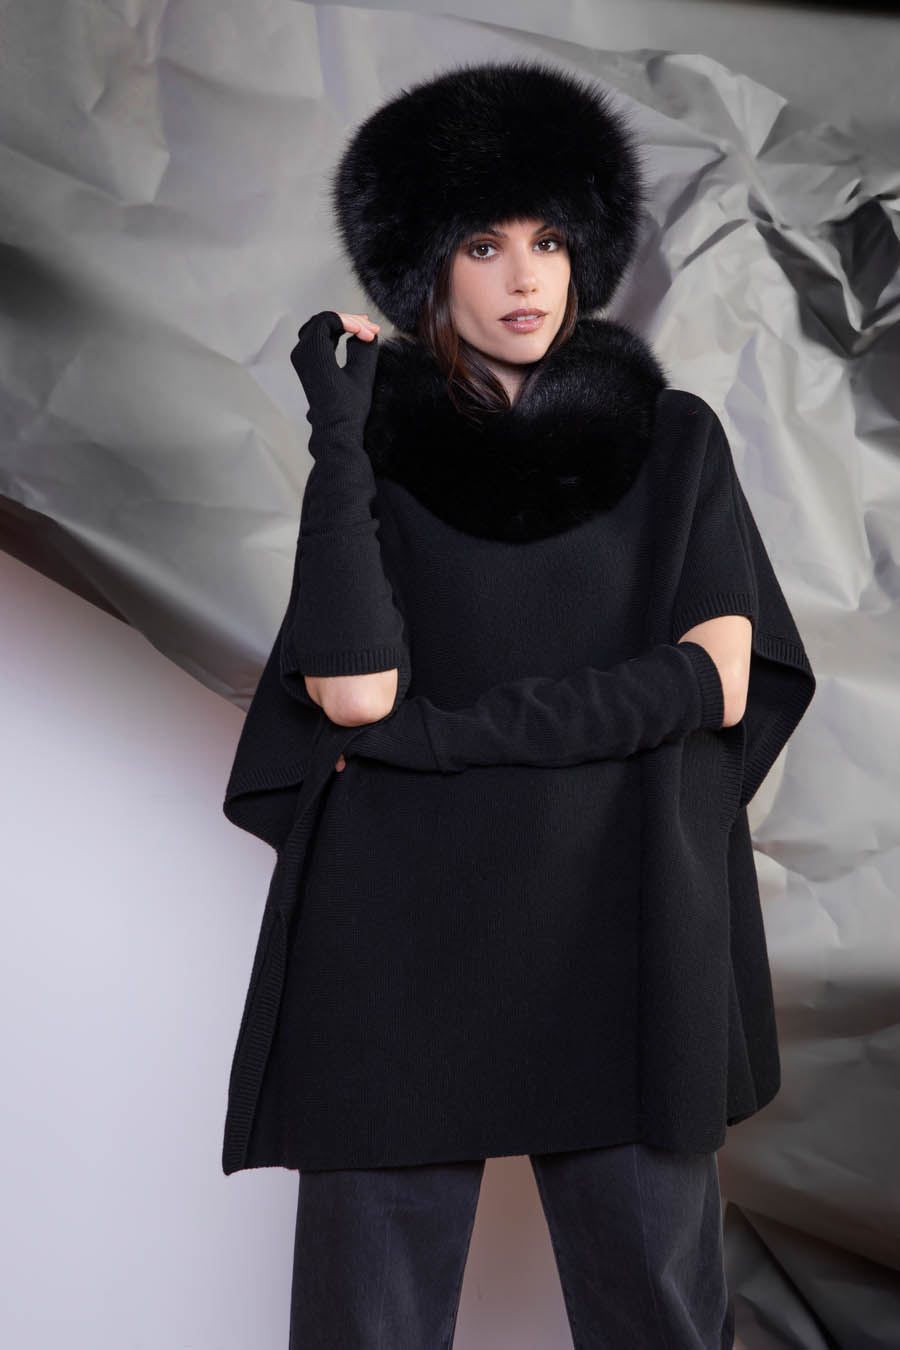 L427 99 01 giovi accessories fur black - Fall Winter 2019-20